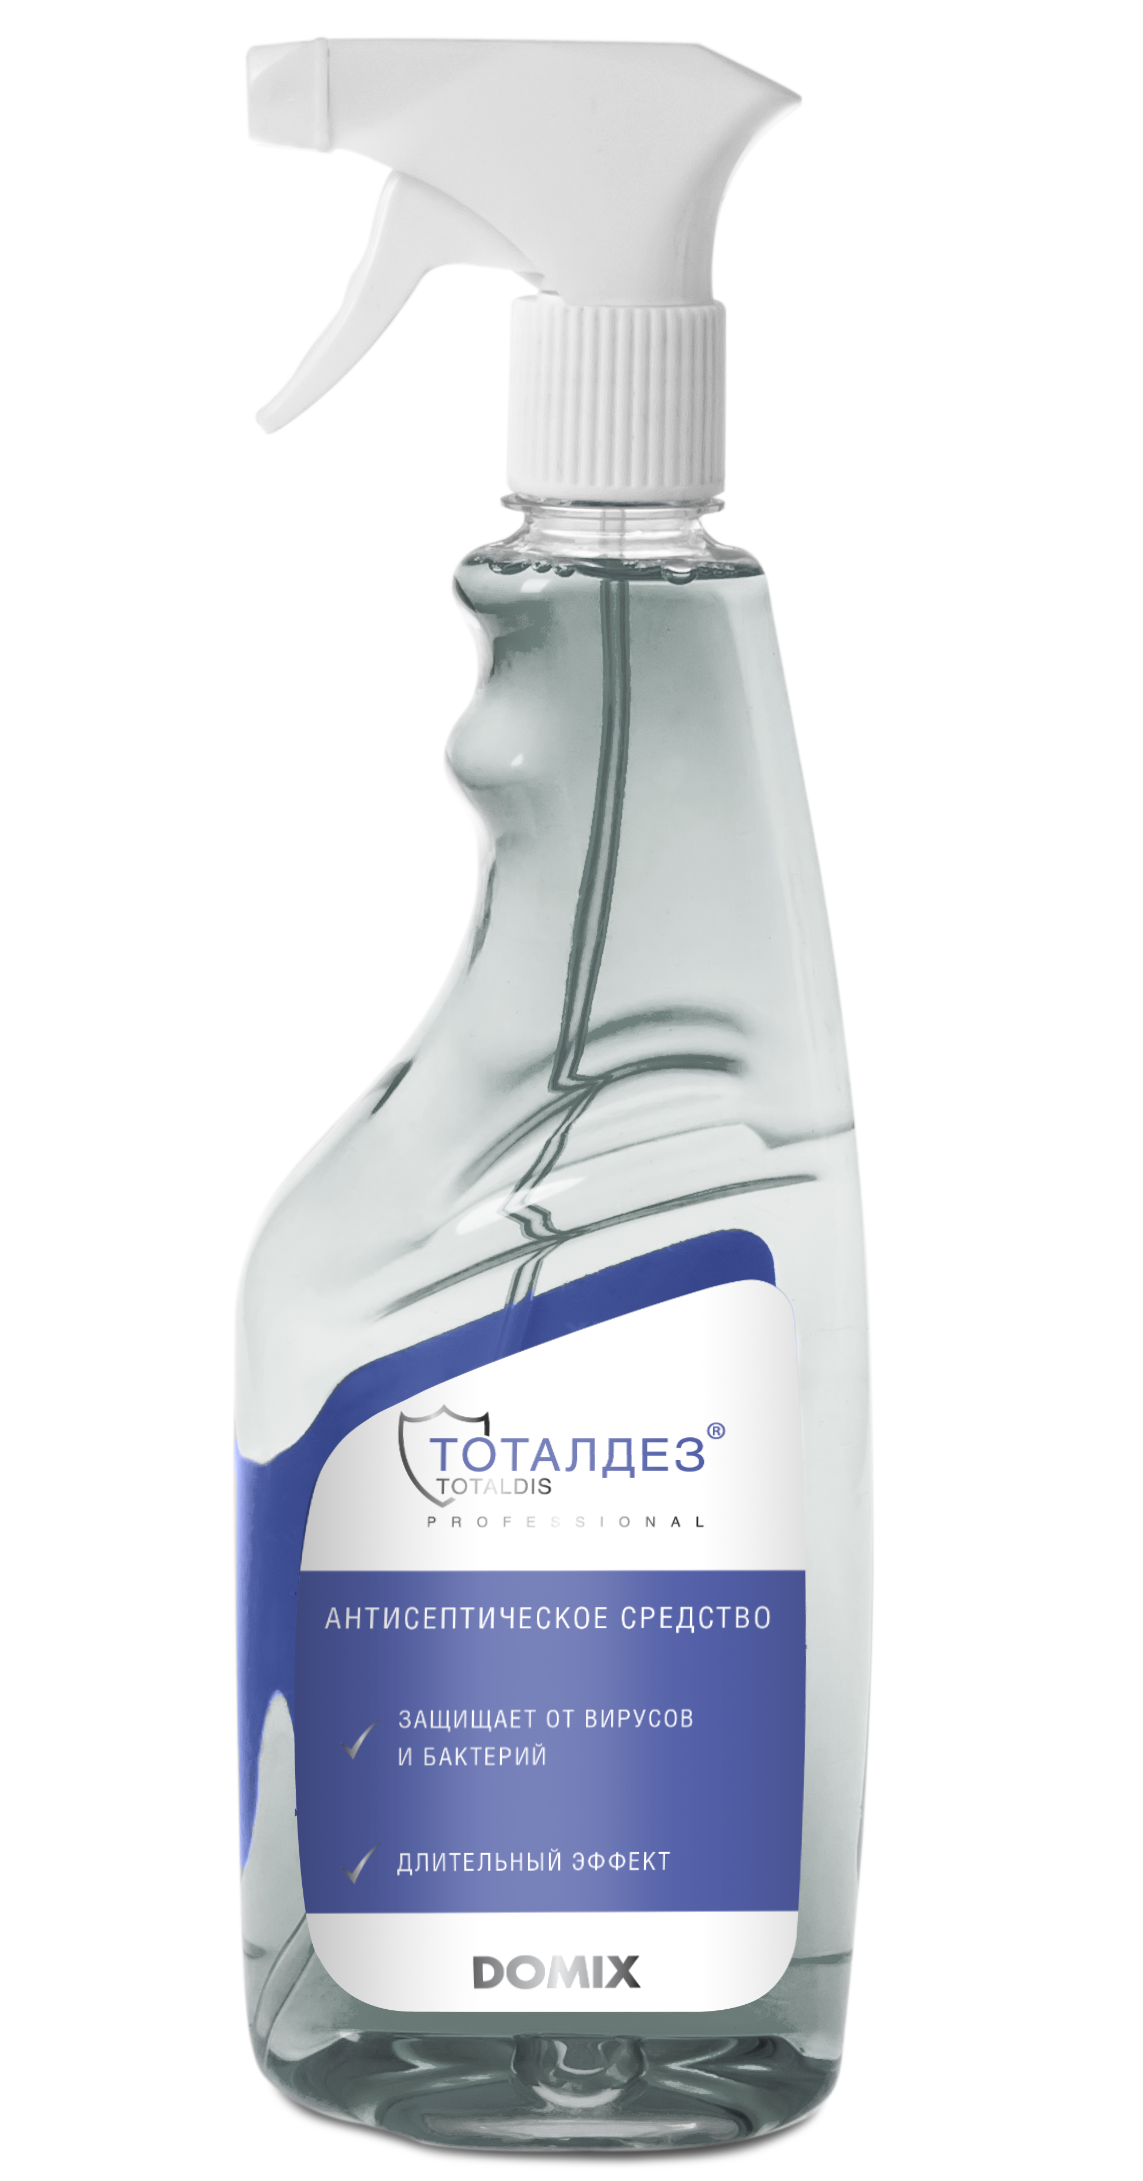 DOMIX Средство антисептическое Тоталдез, изопропиловый спирт 71% 700 мл